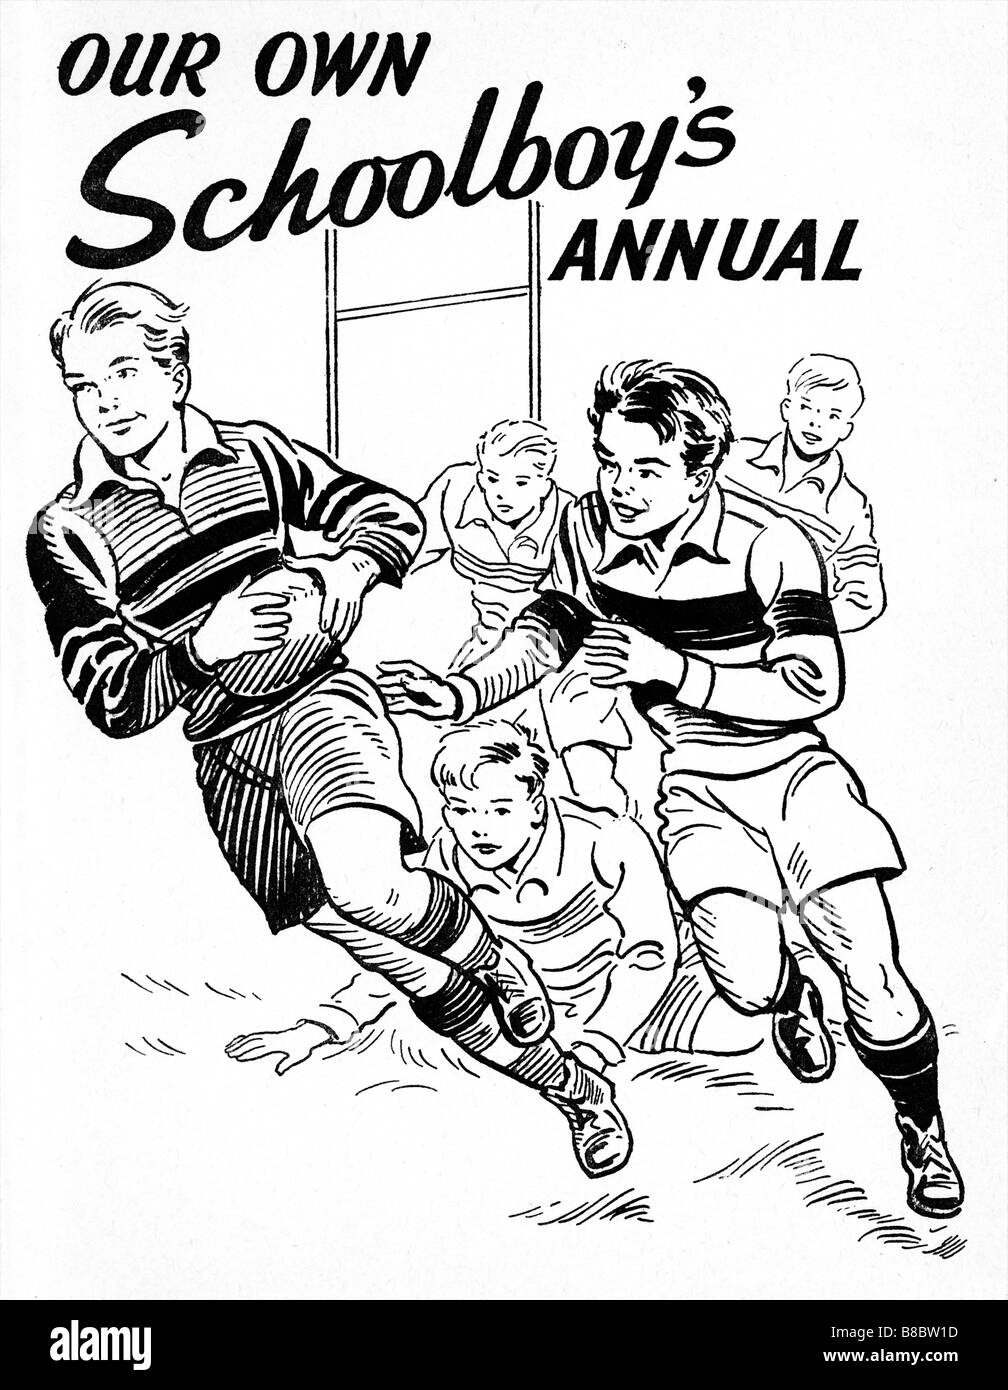 Annuel 1955 écoliers Rugby garçons annuel de la bande dessinée couverture avec une illustration de l'école match rugger Banque D'Images